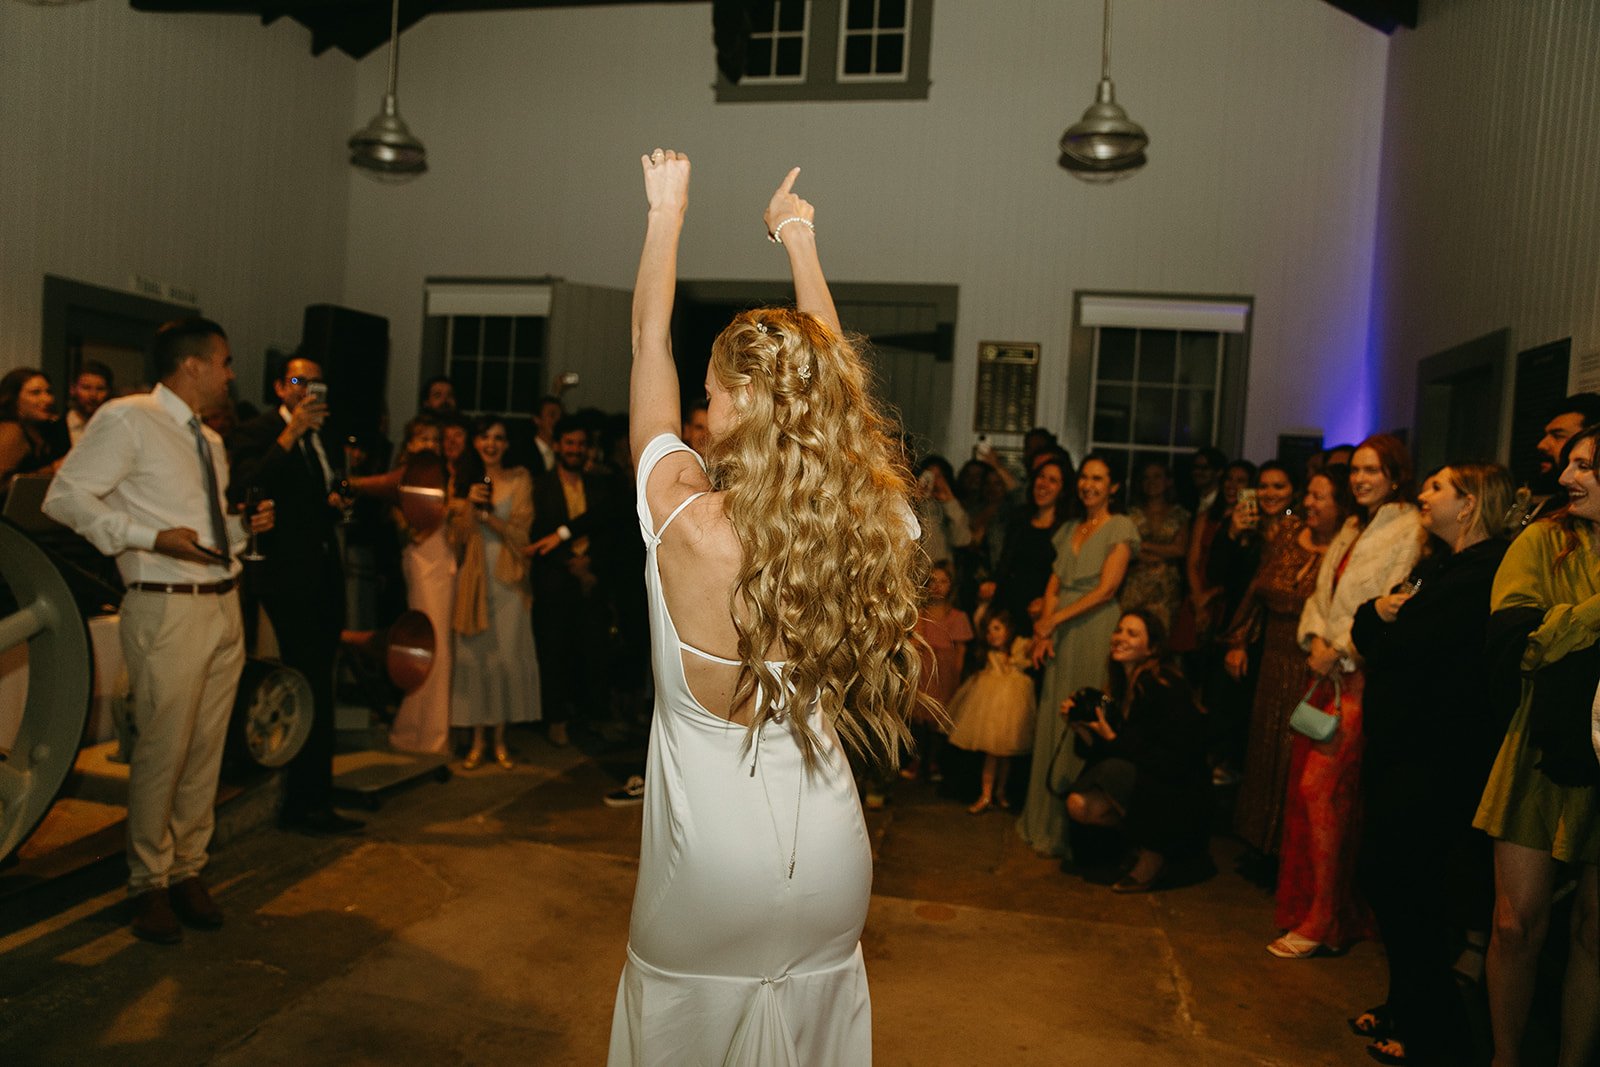 Bride dancing on the dance floor during wedding reception